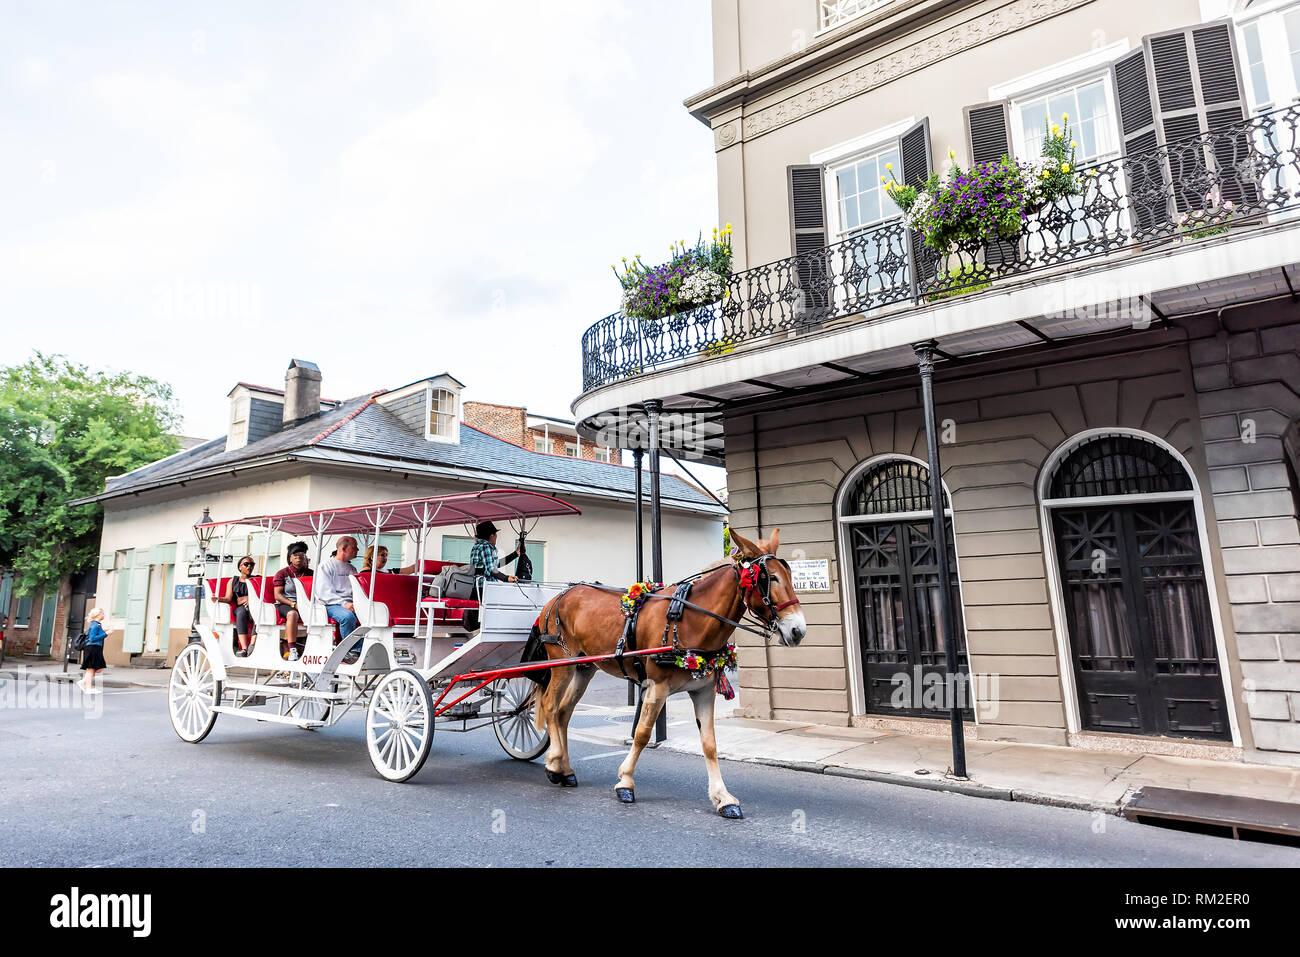 New Orleans, Stati Uniti d'America - 23 Aprile 2018: Royal street nel centro storico della città in Louisiana con cavalli e muli carrello buggy tour guida con le persone Foto Stock